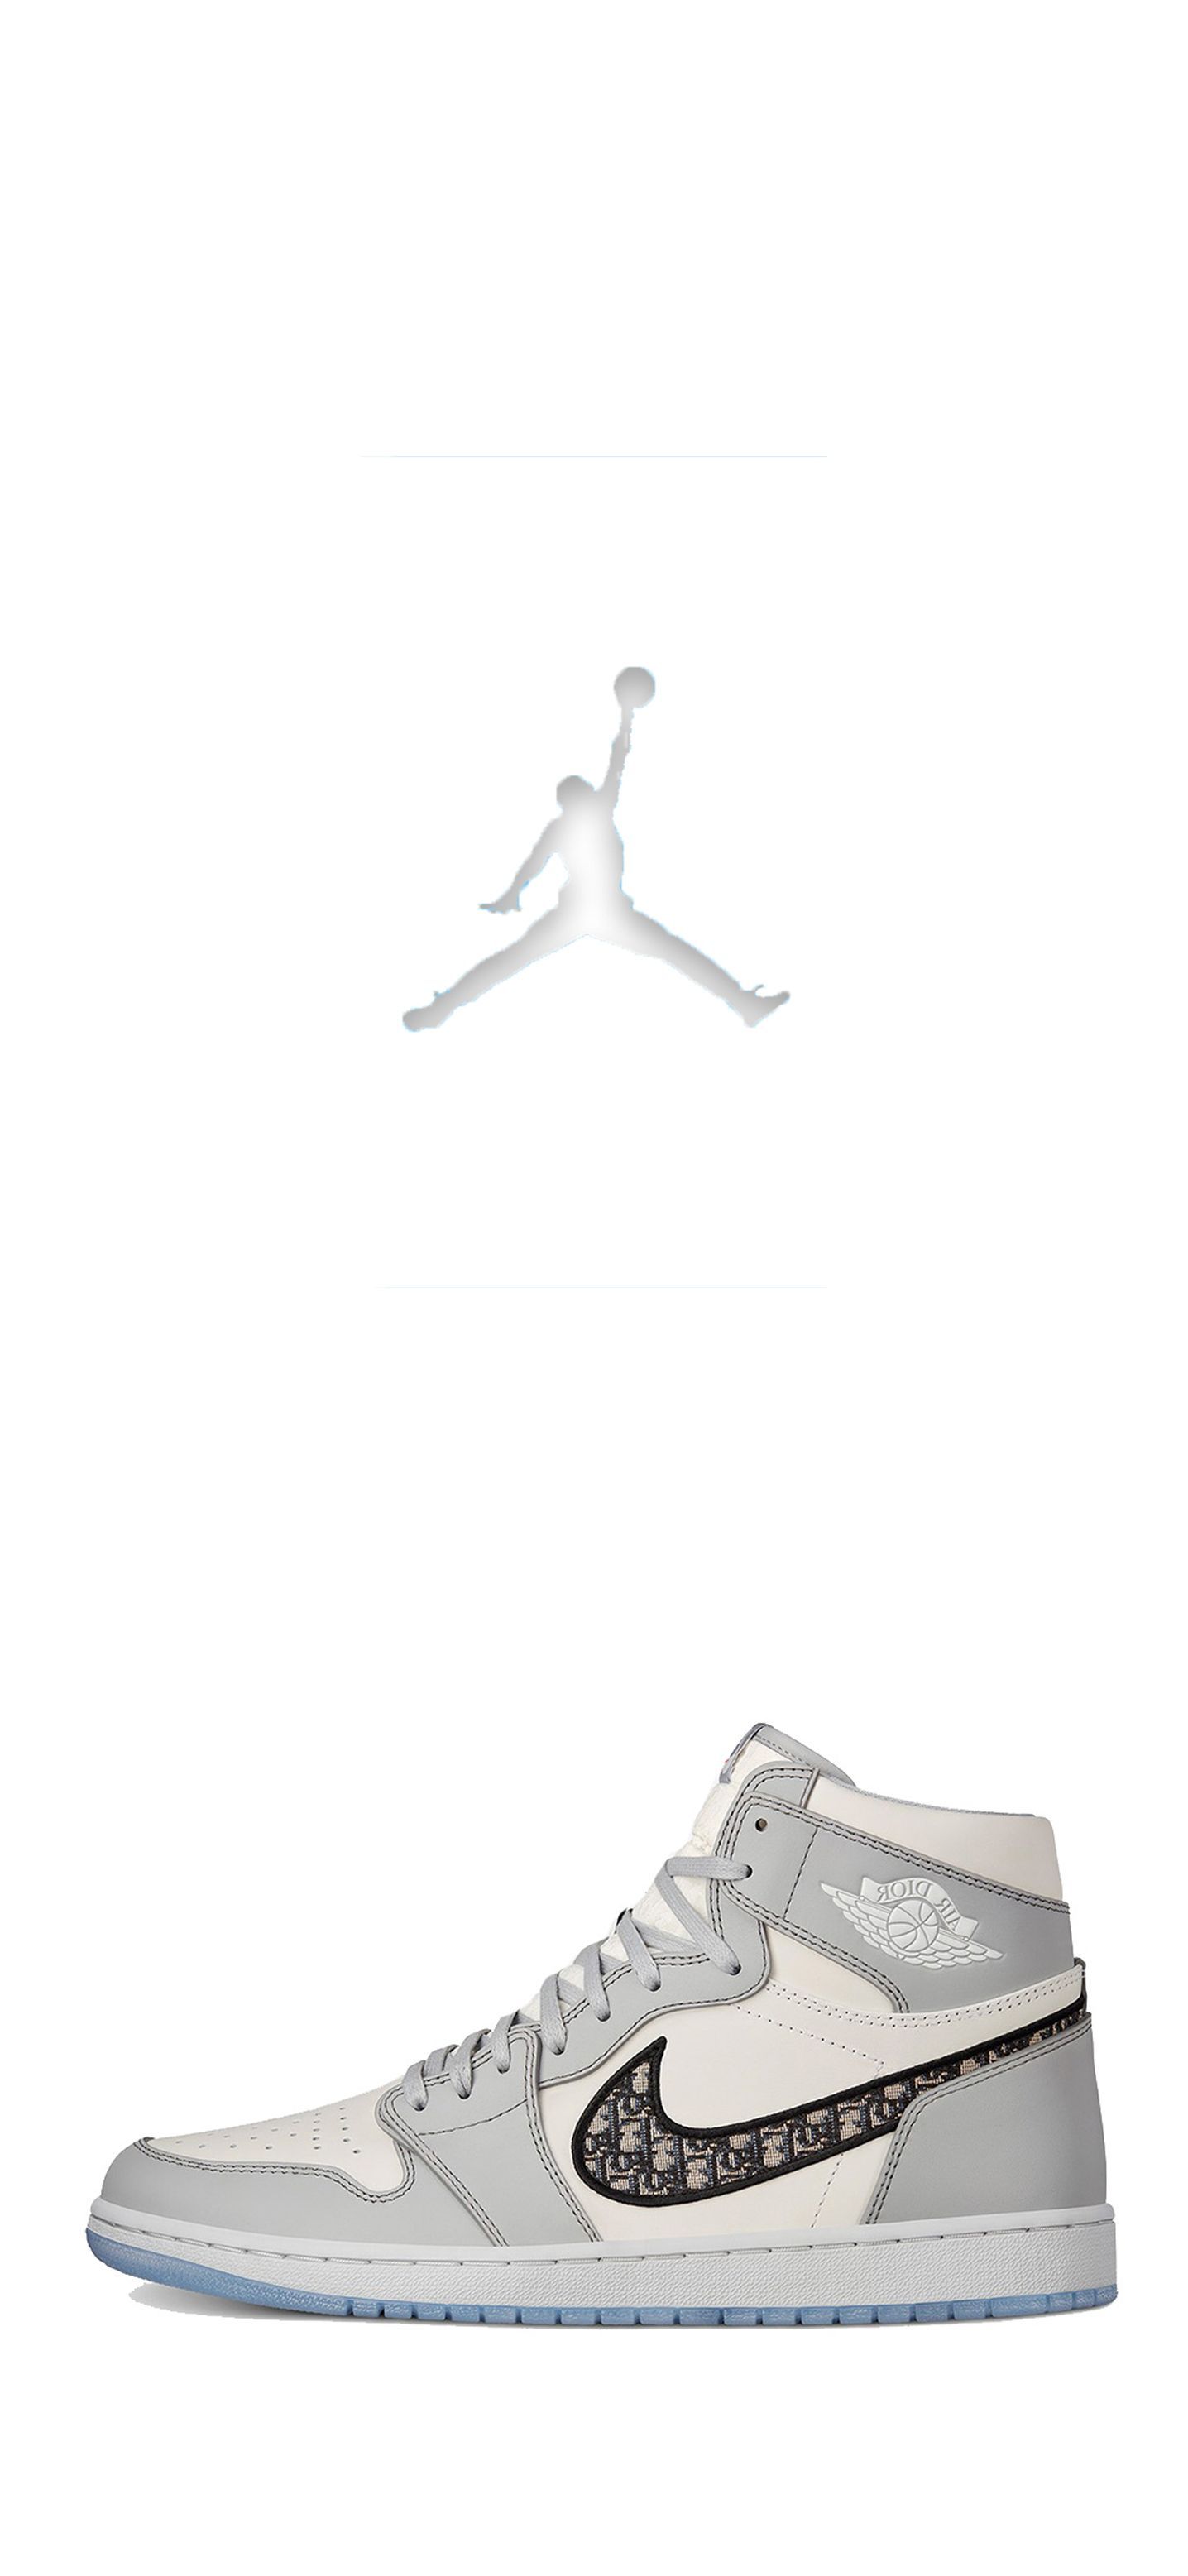 Dior Jordan 1. Jordan shoes girls, Jordan shoes wallpaper, Nike air shoes